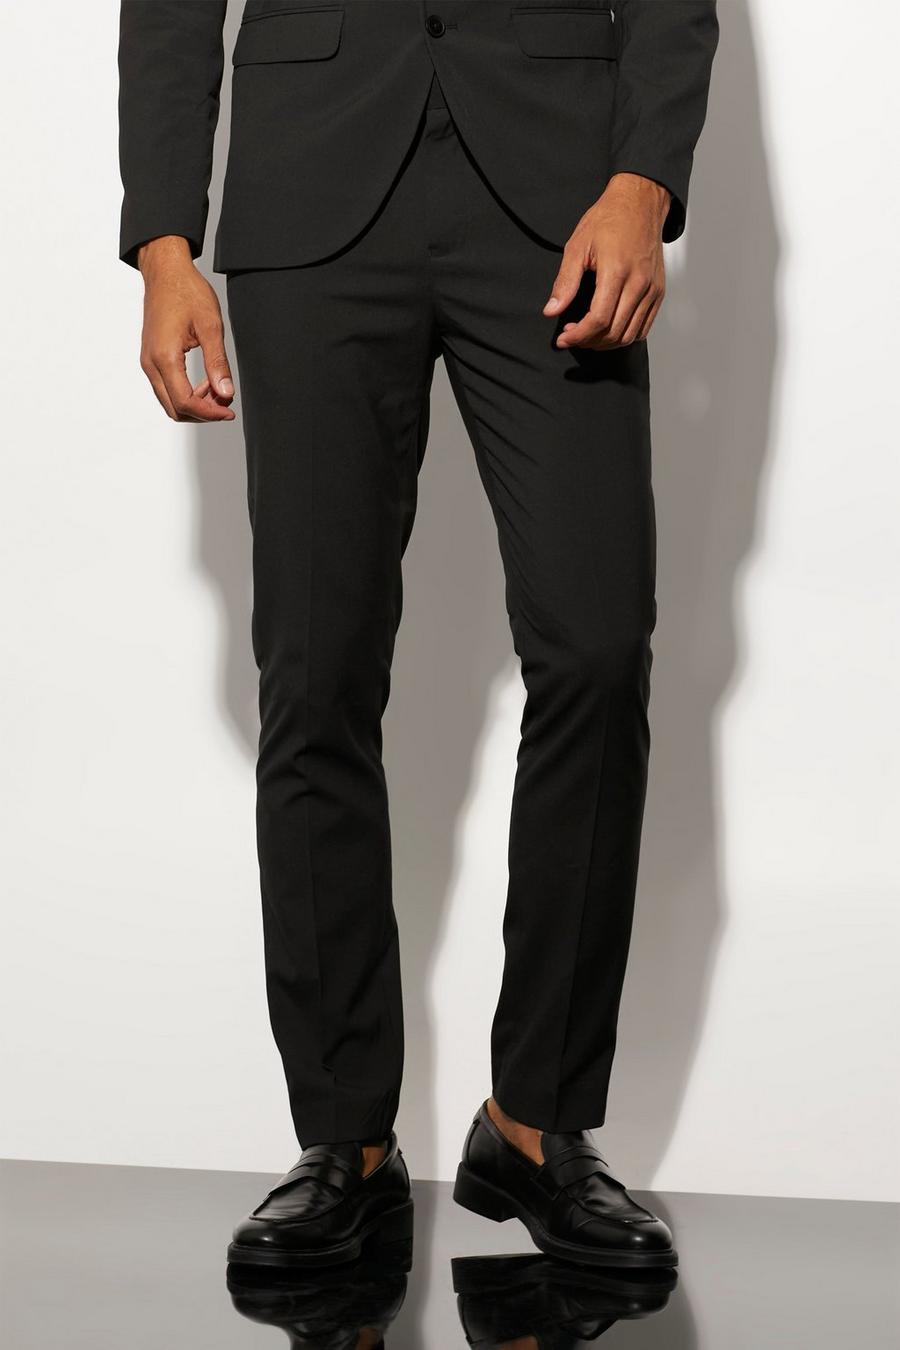 שחור black מכנסי חליפה סקיני